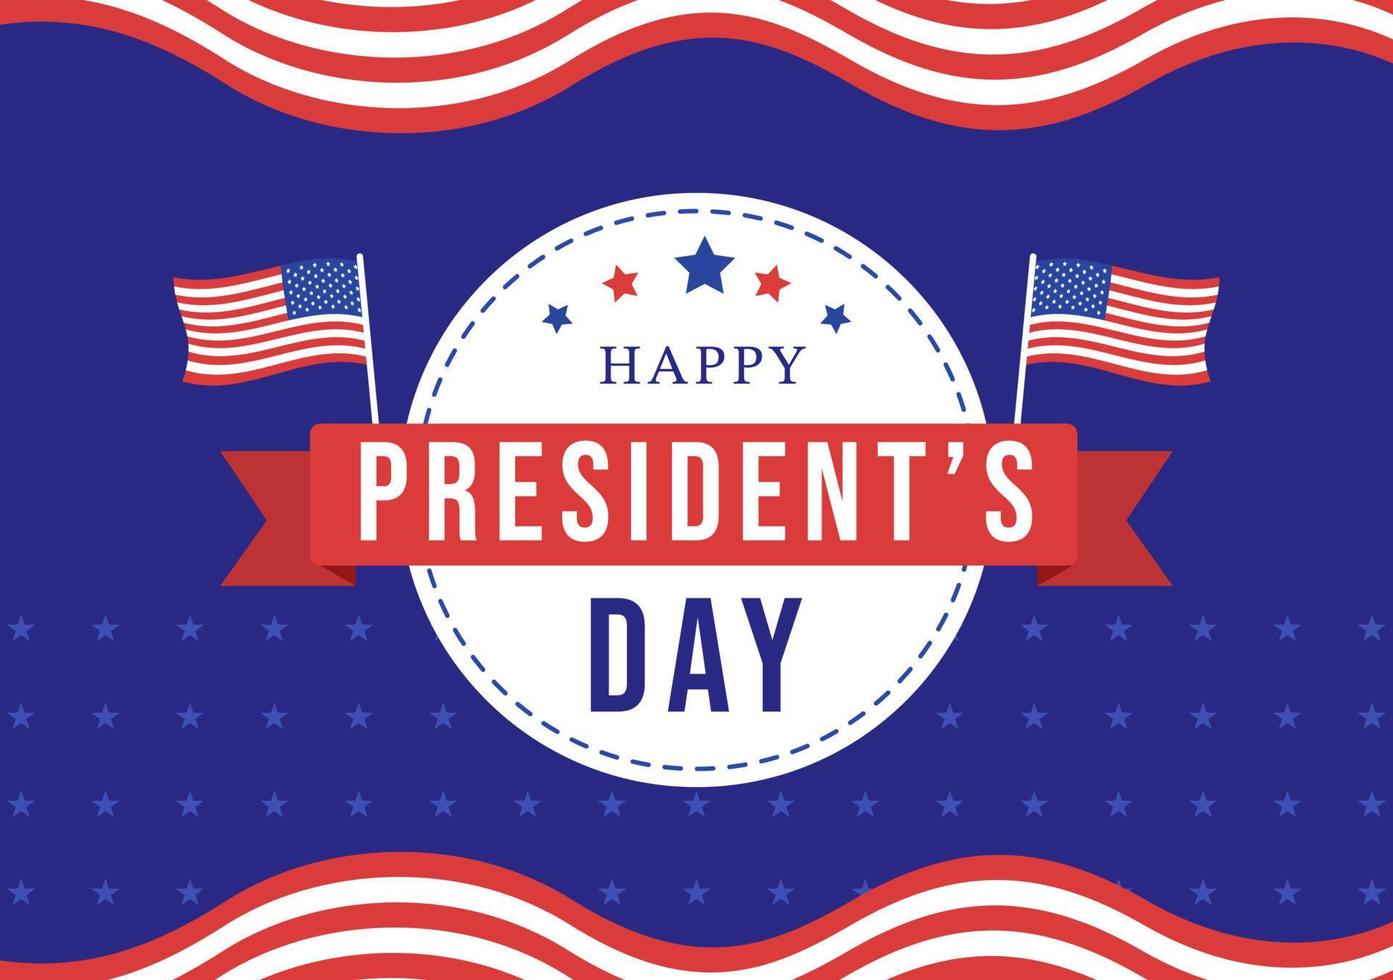 bonne fête des présidents avec étoiles et drapeau américain pour le président américain adapté à l'affiche dans l'illustration de modèles dessinés à la main de dessin animé plat vecteur